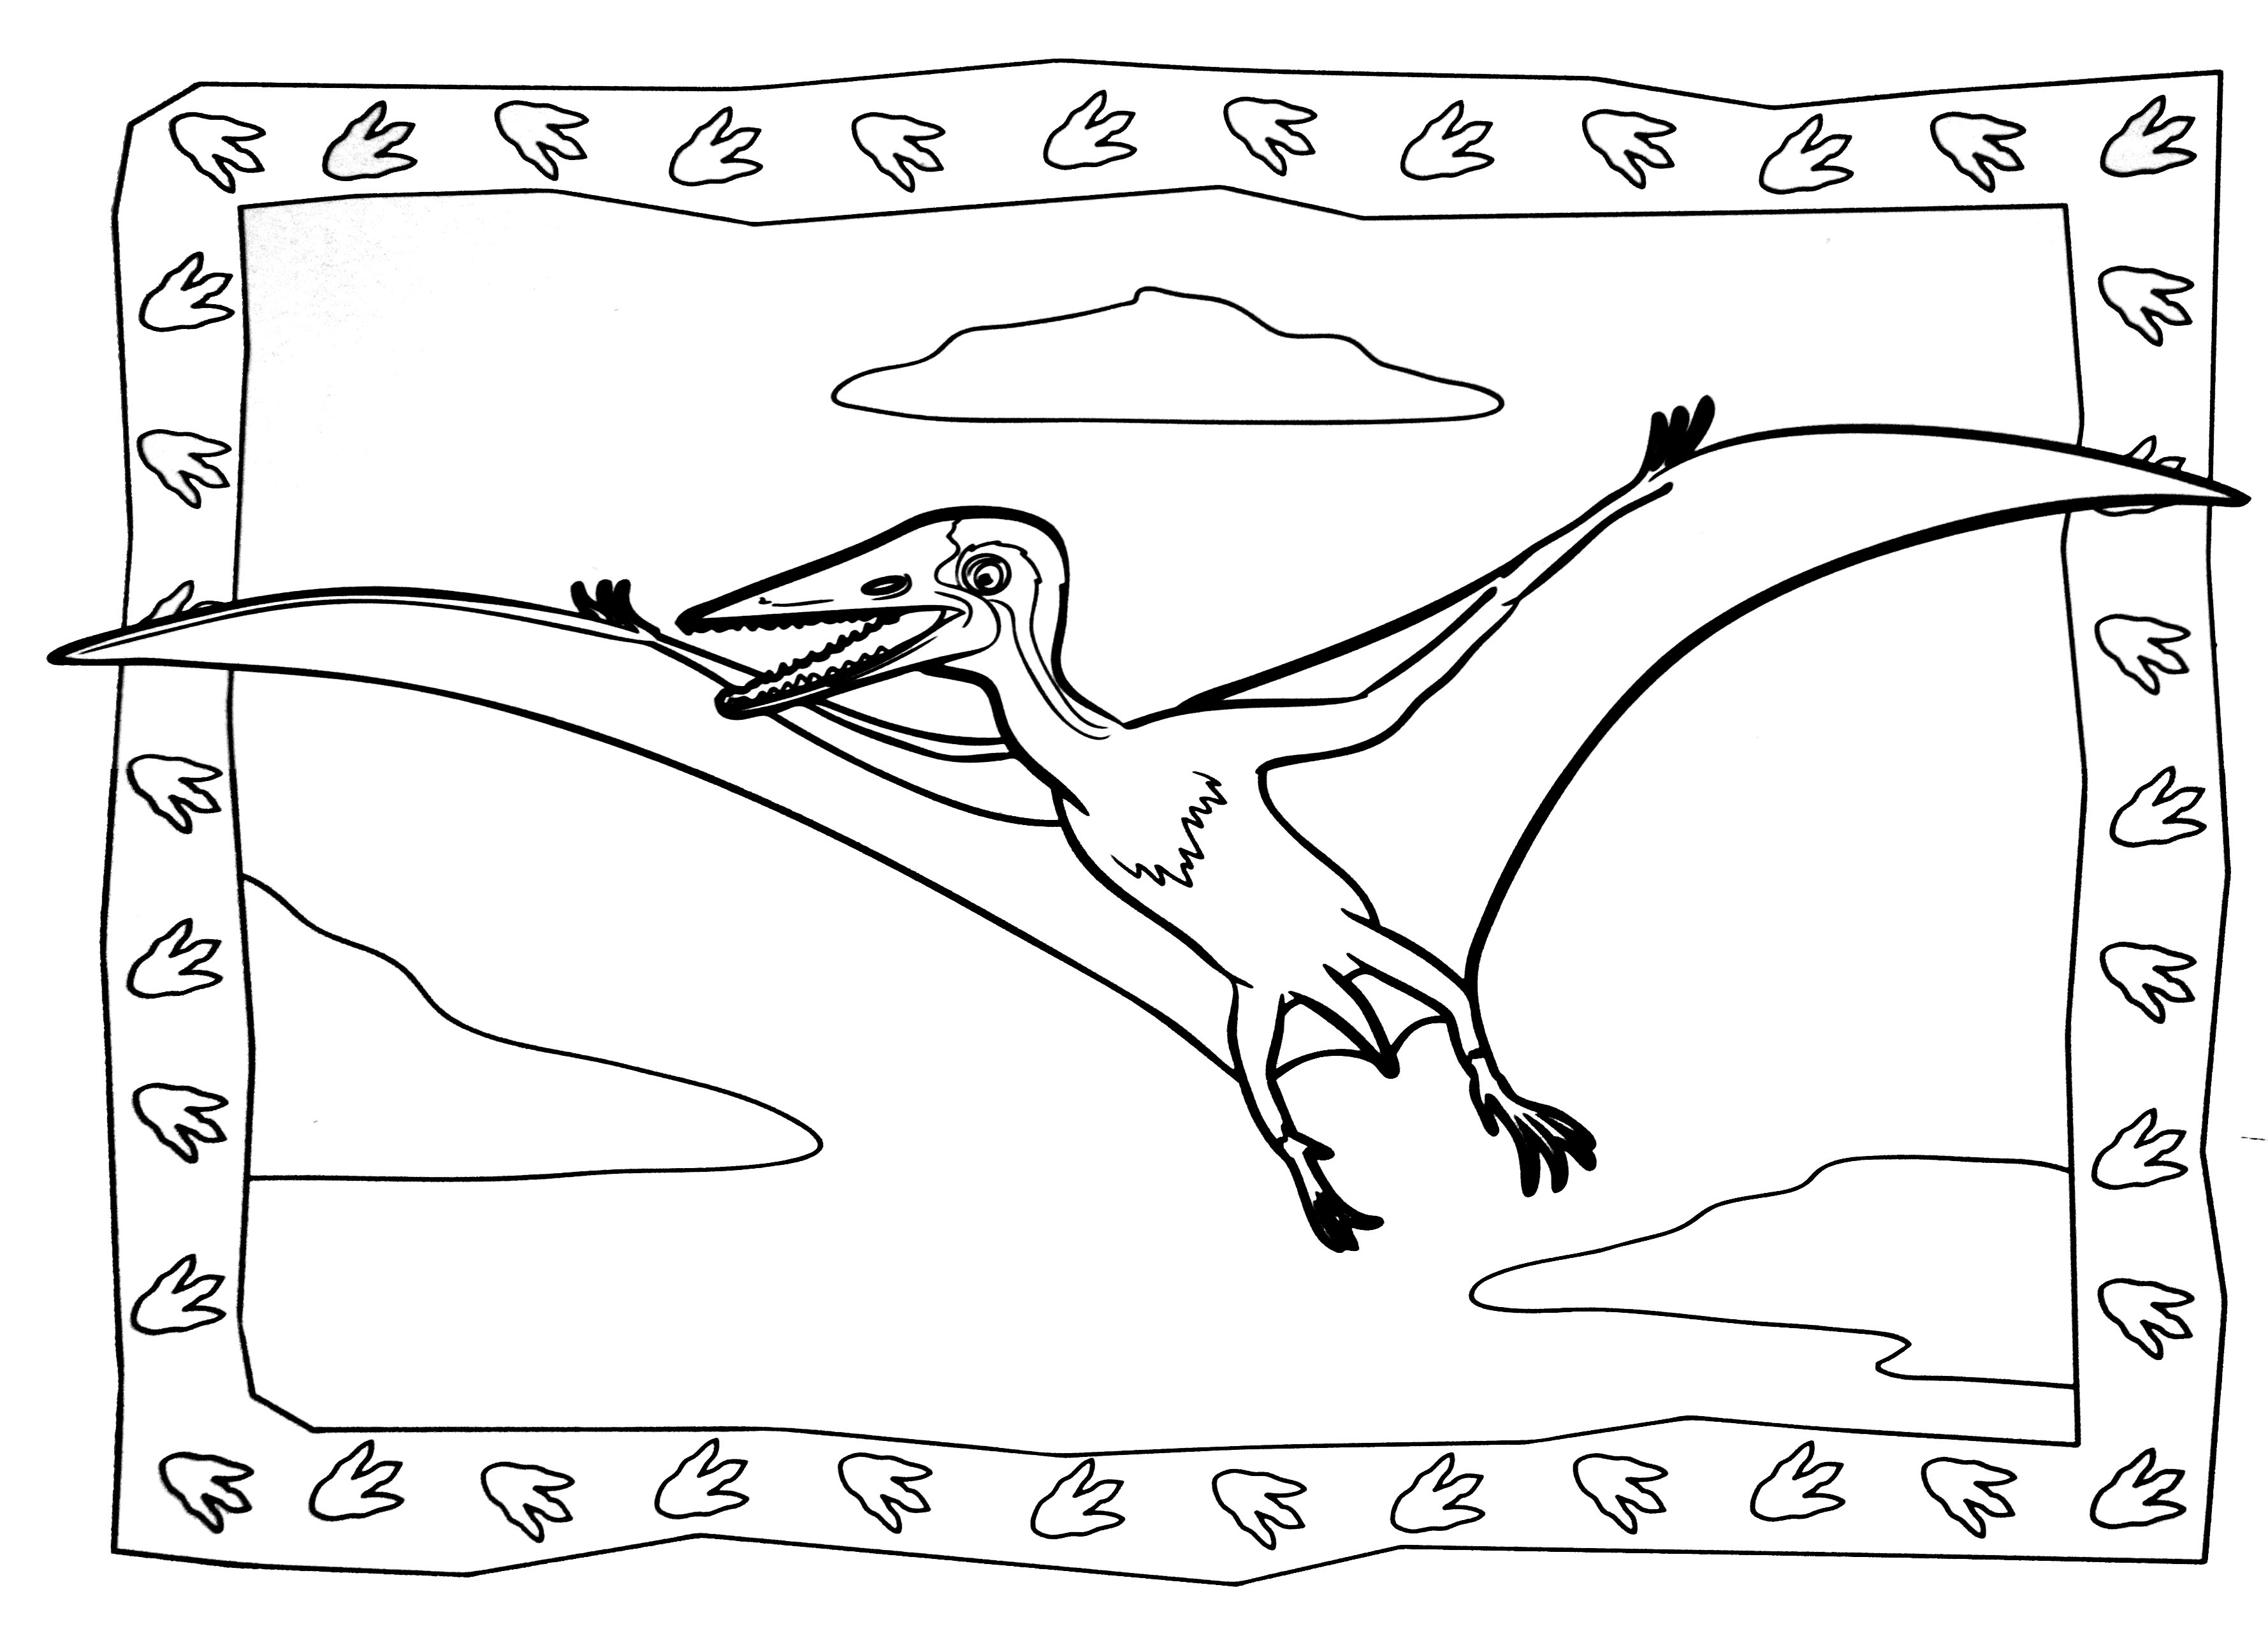 O antepassado das aves, o Velociraptor!